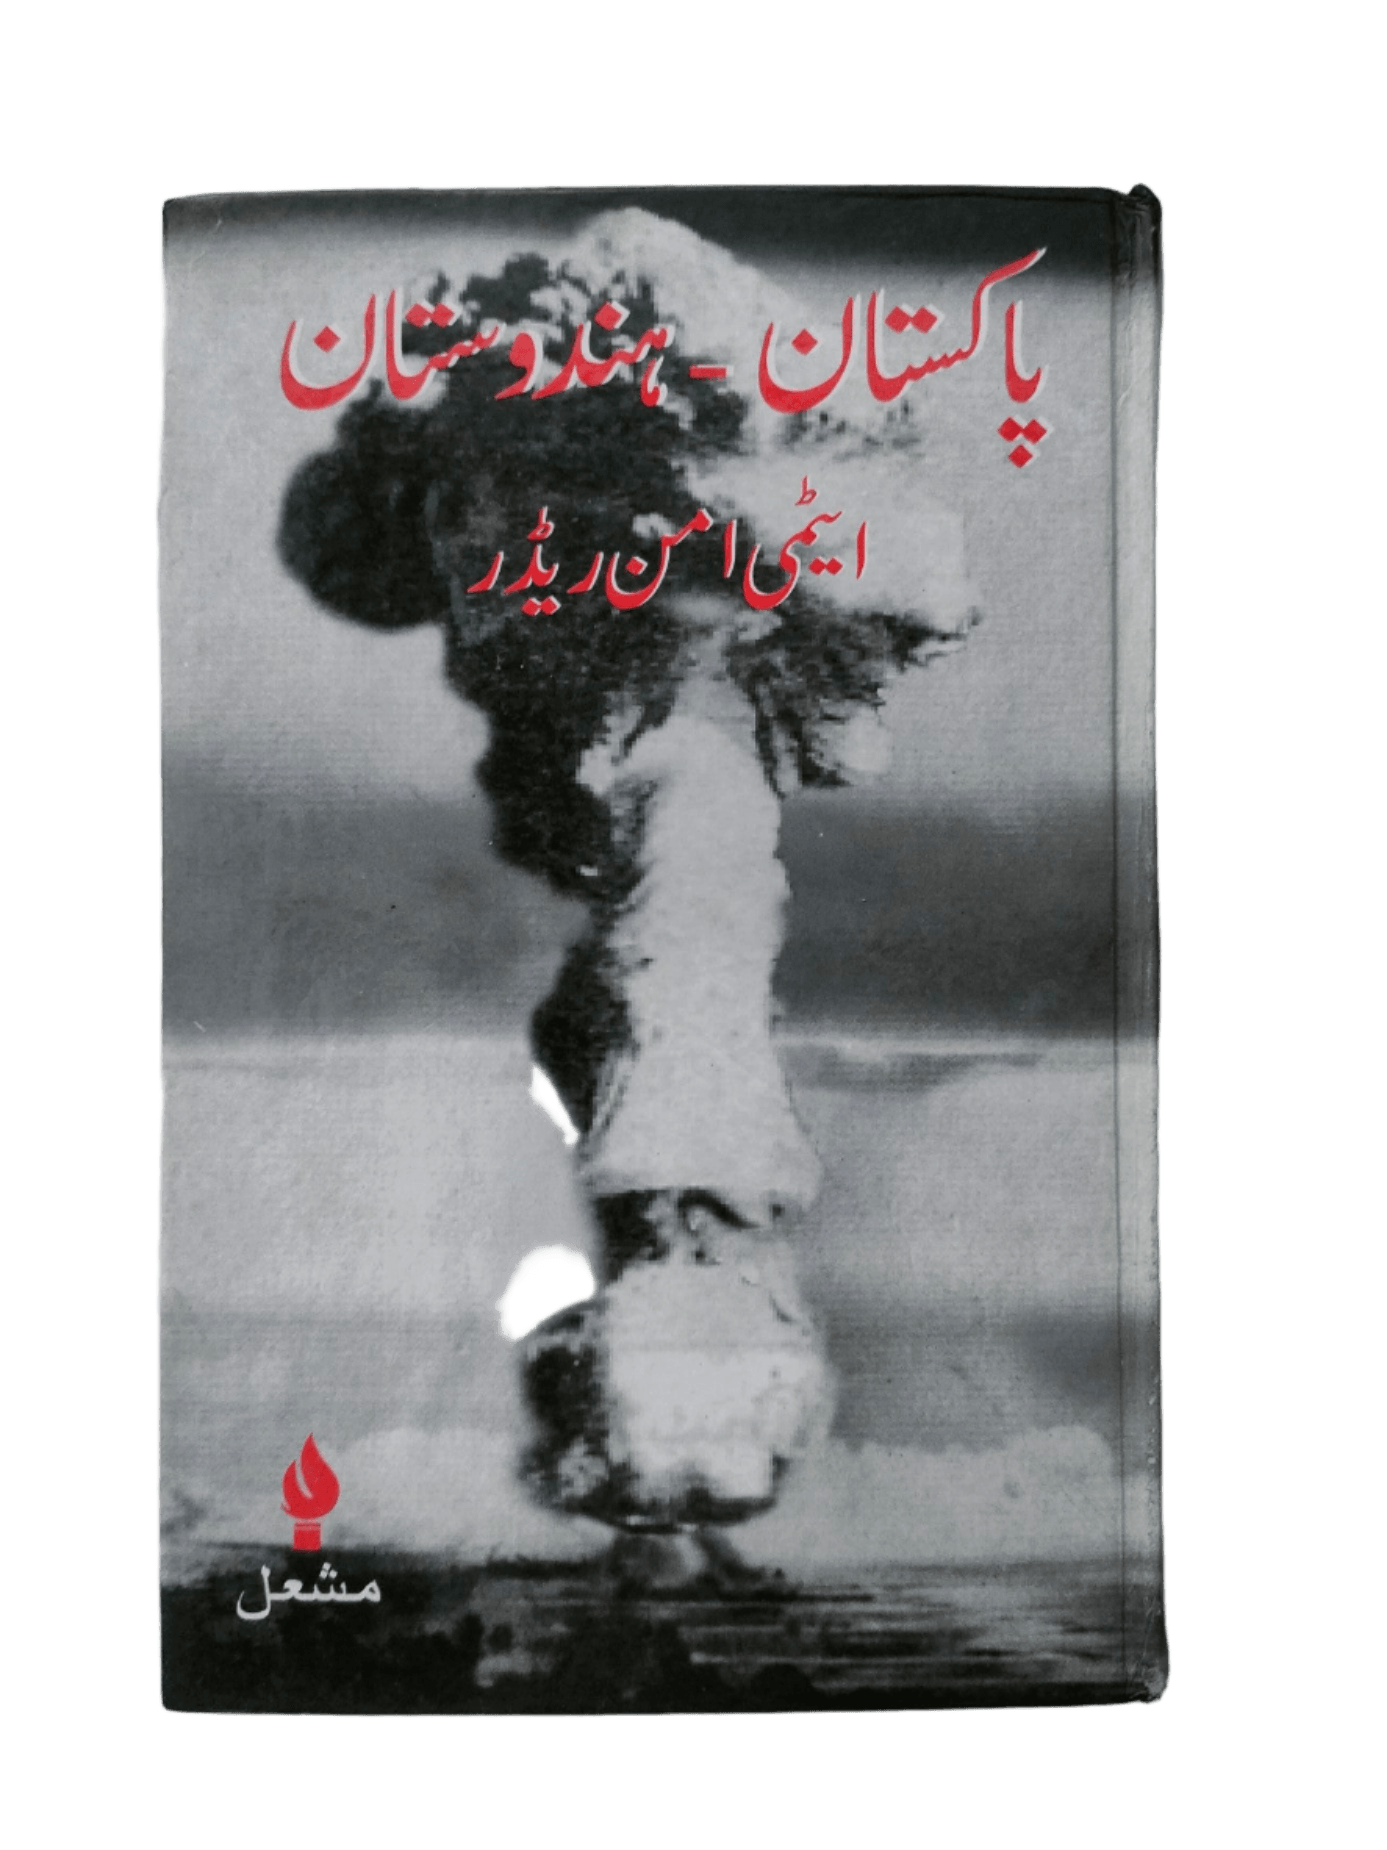 Pakistan - Hindustan Atomi Aman Reader (Pakistan - India Nuclear Peace Reader) - KHAJISTAN™